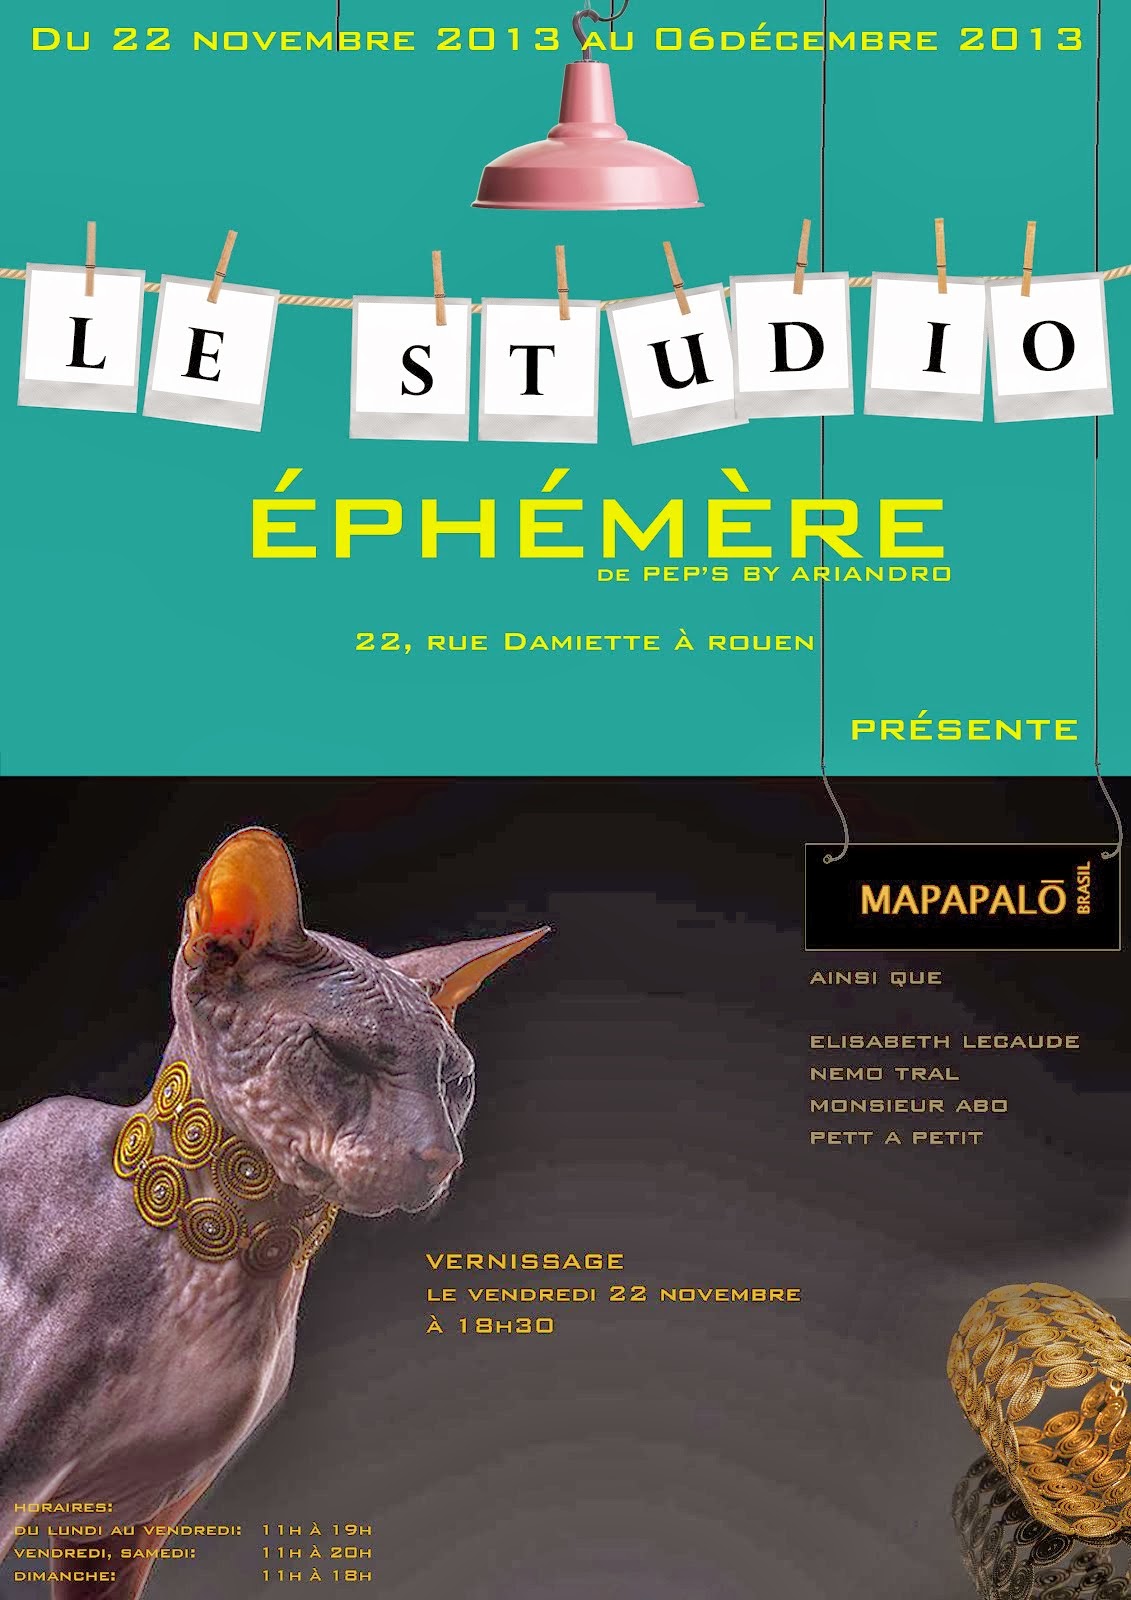 STUDIO EPHEMERE ROUEN edition 2 à suivre